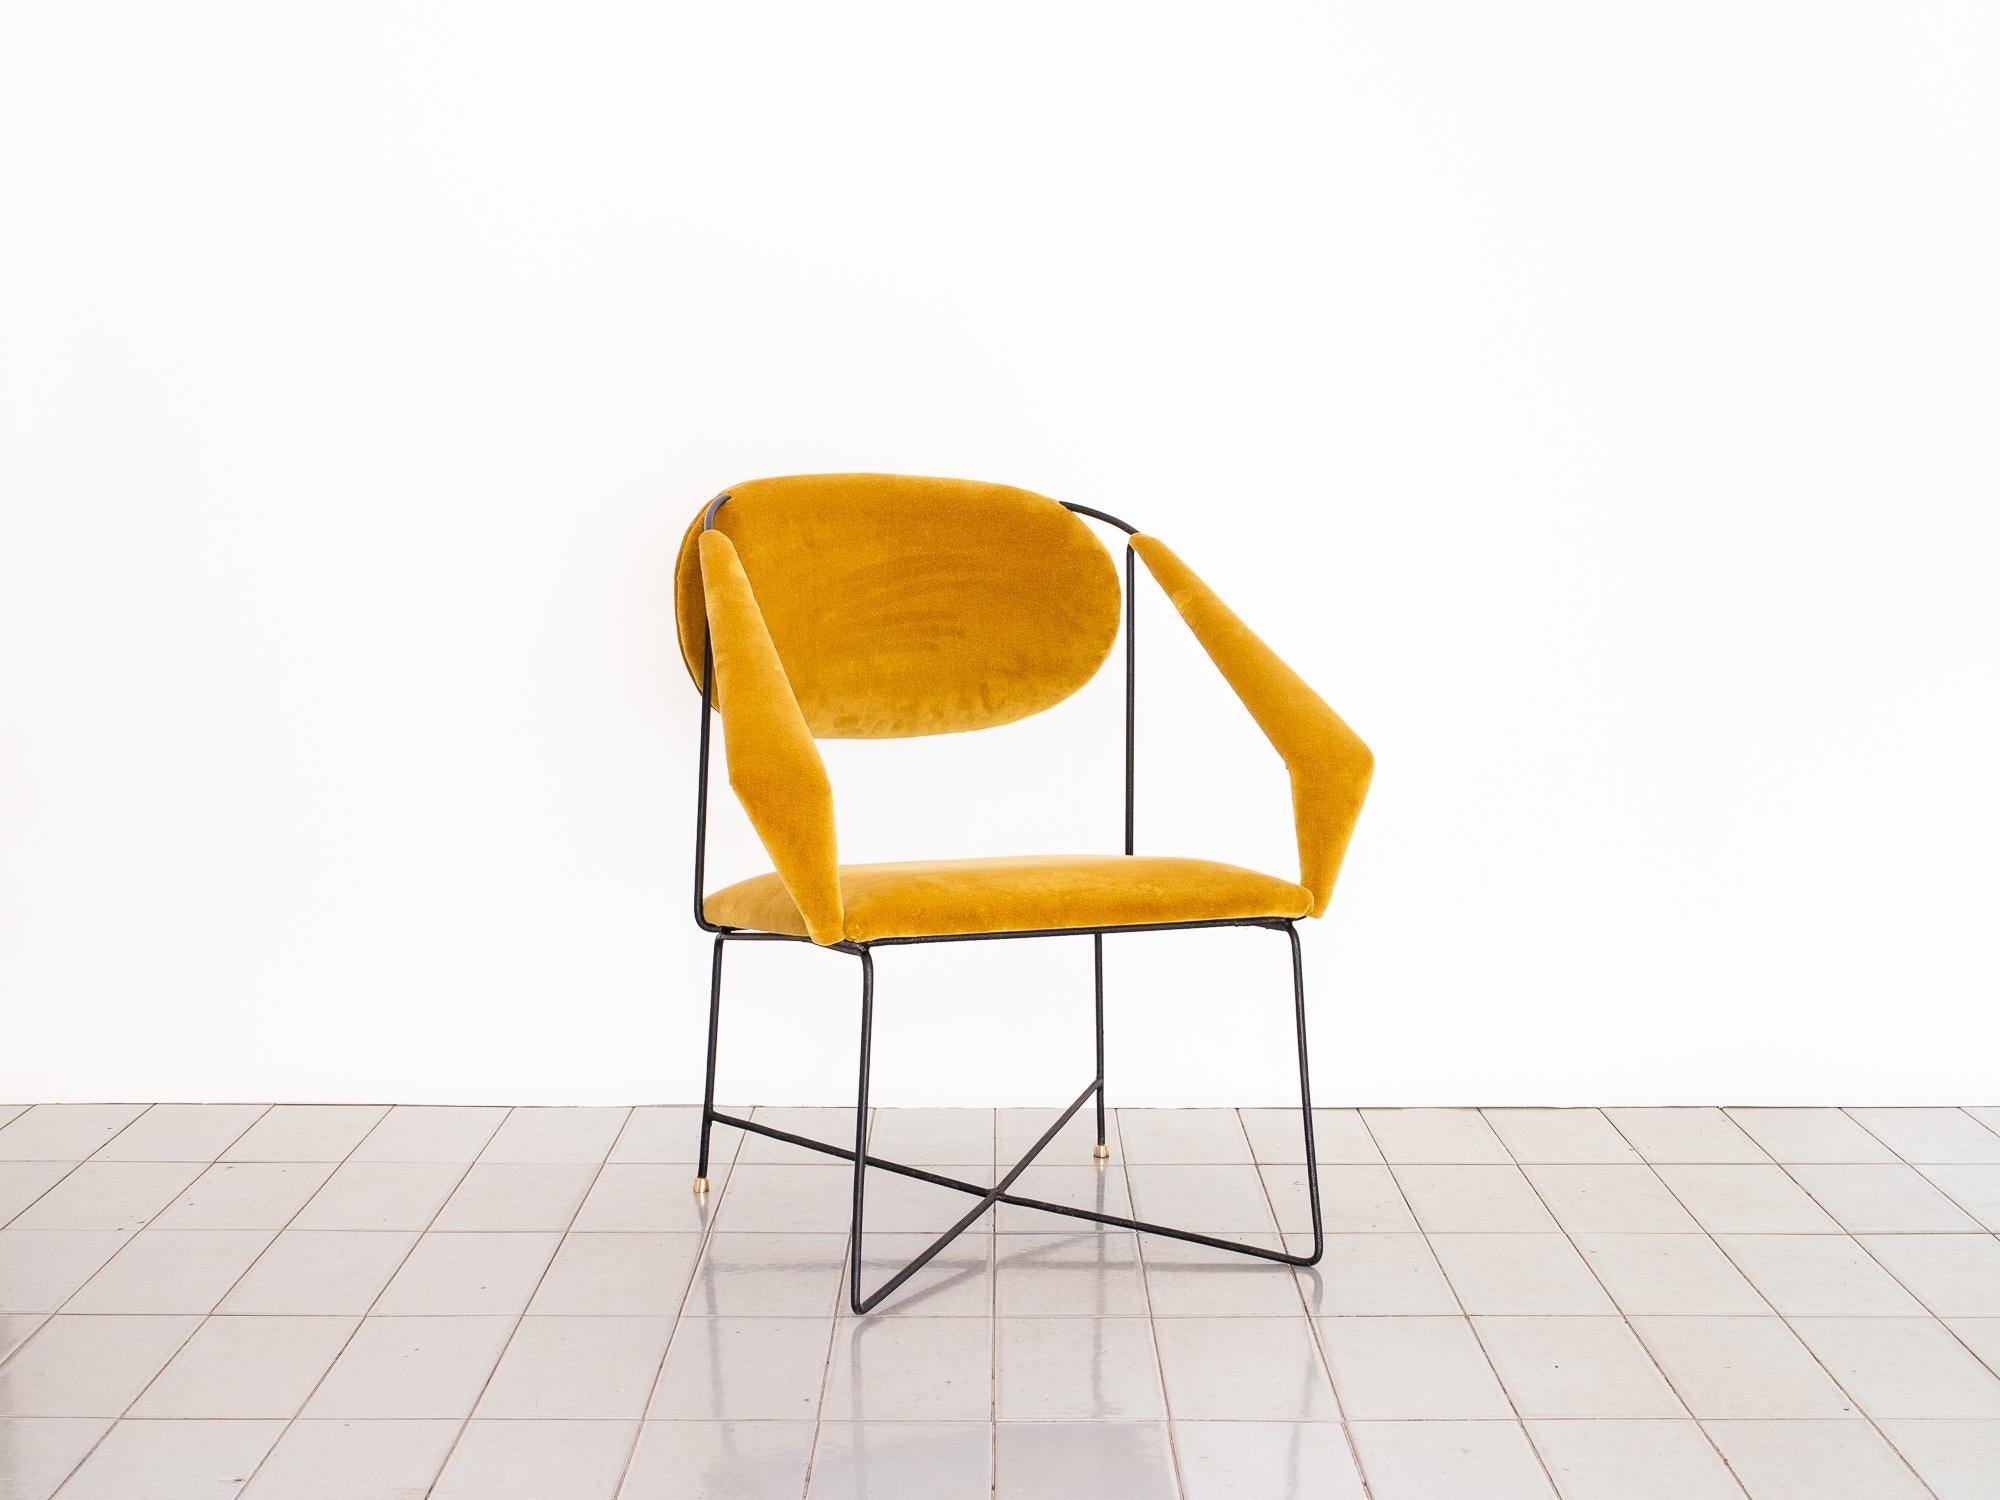 1950s Club Chair in Wrought Iron and Yellow Velvet, Brazilian Mid Century Modern (Moderne der Mitte des Jahrhunderts)